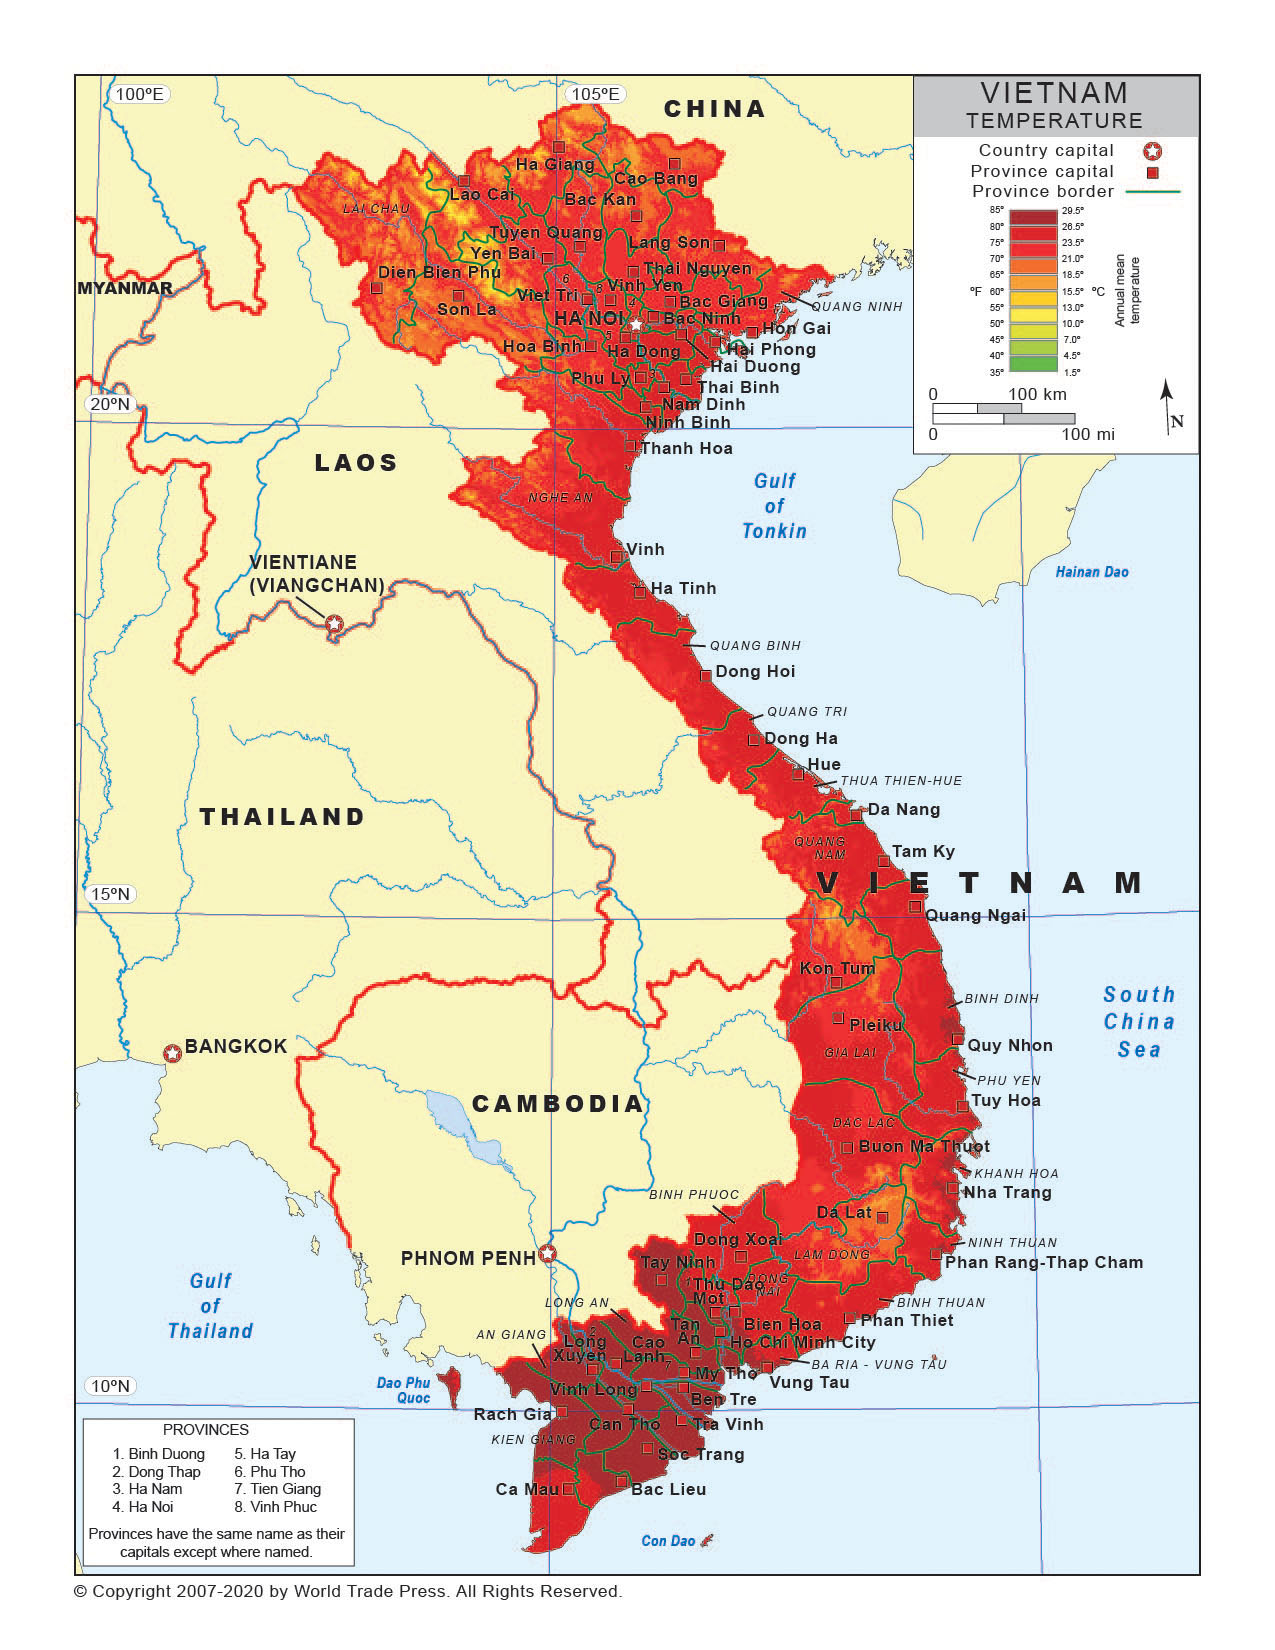 Temperature Map of Vietnam